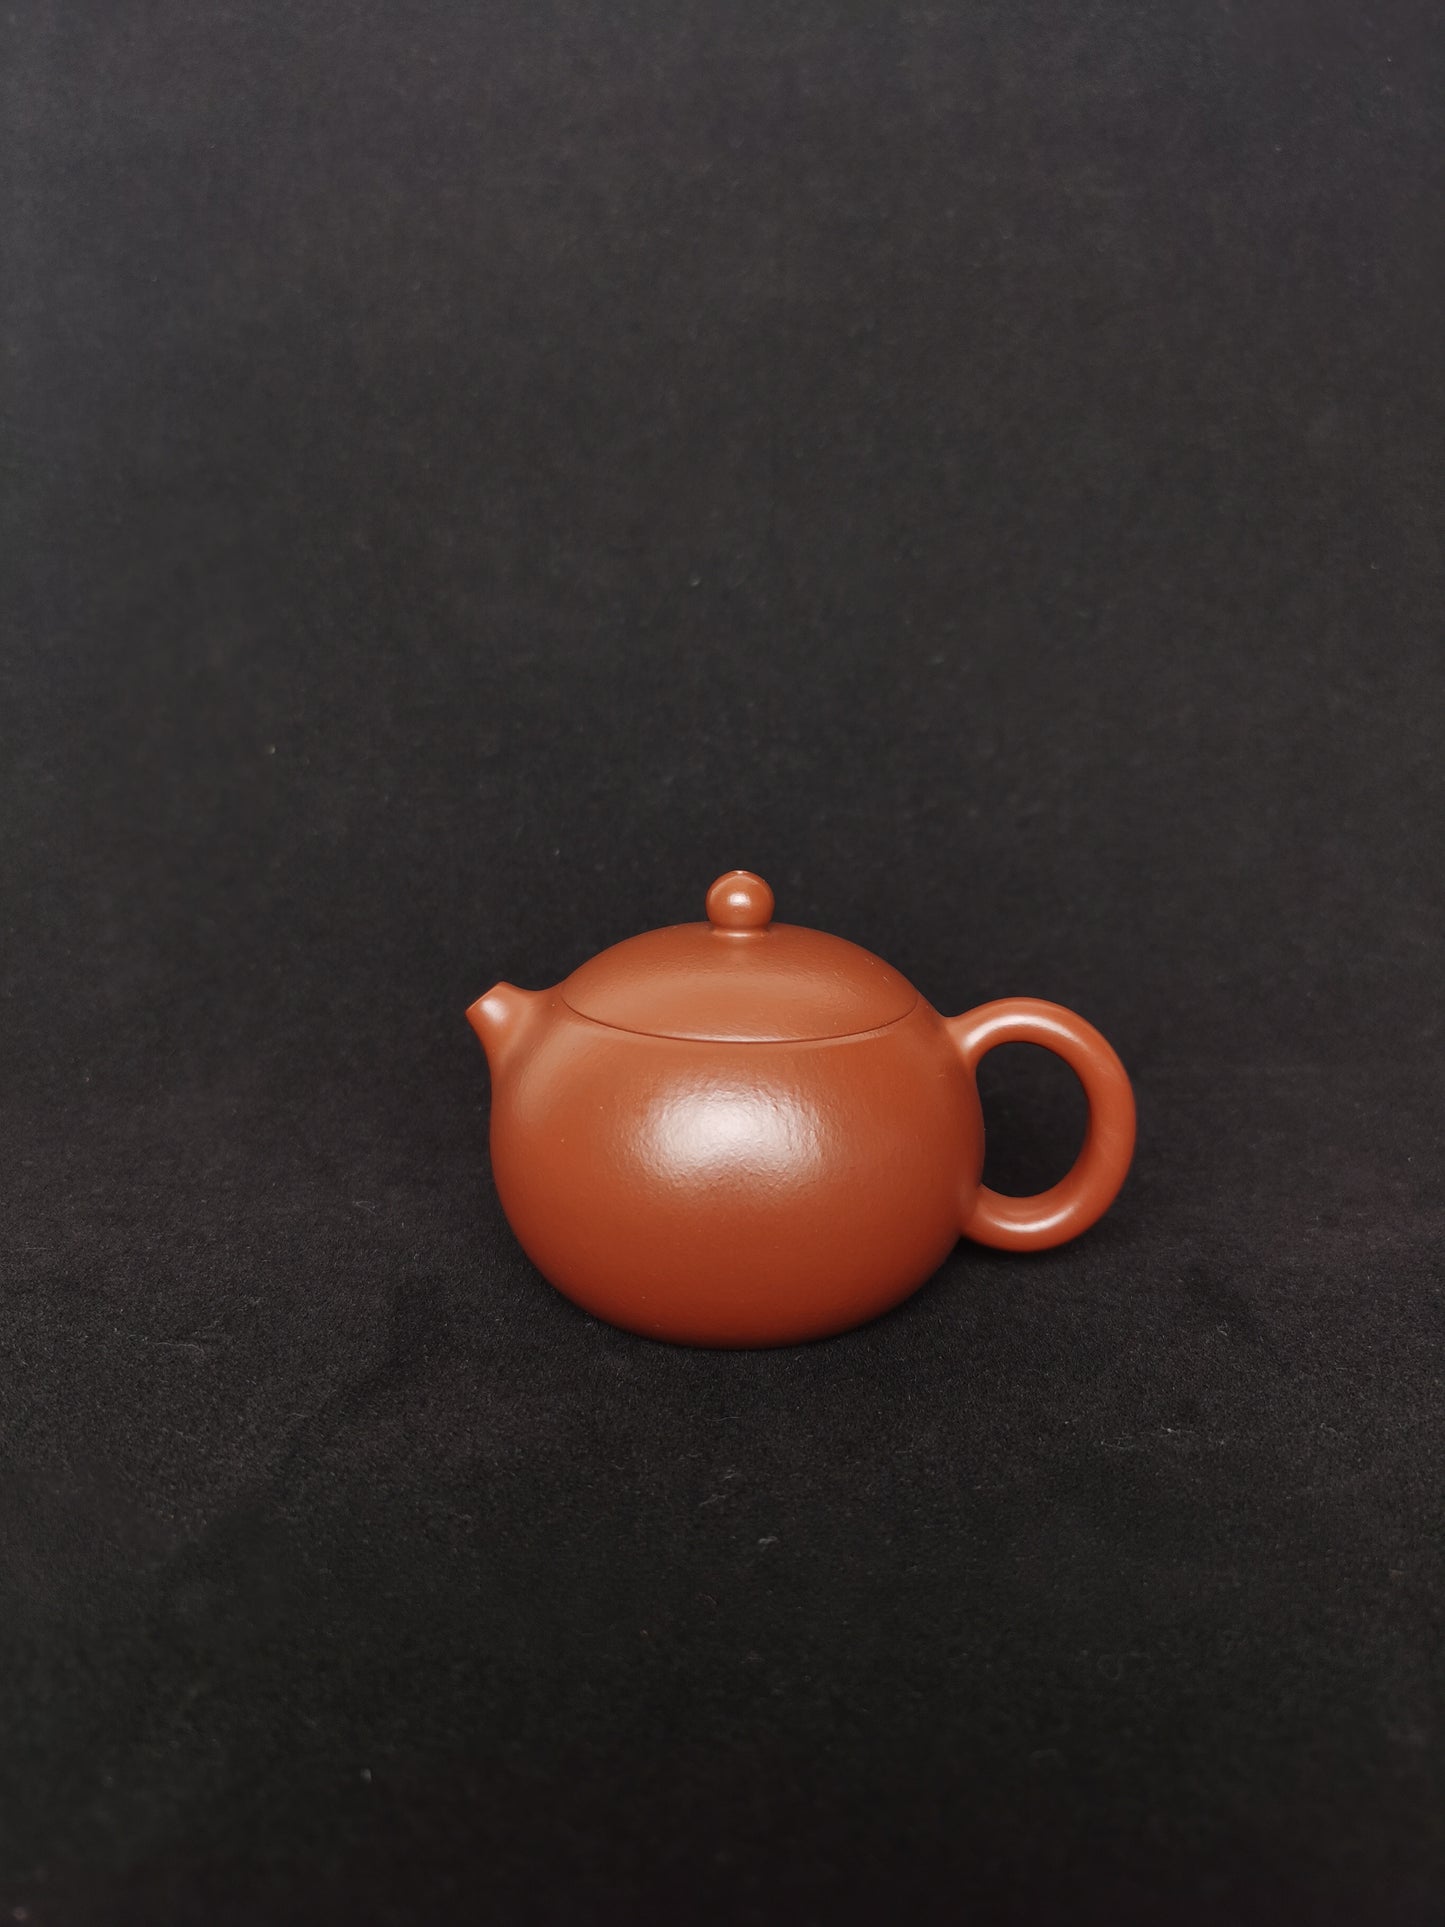 yixing teapot , art collection. ấm trà Yixing, bộ sưu tập nghệ thuật